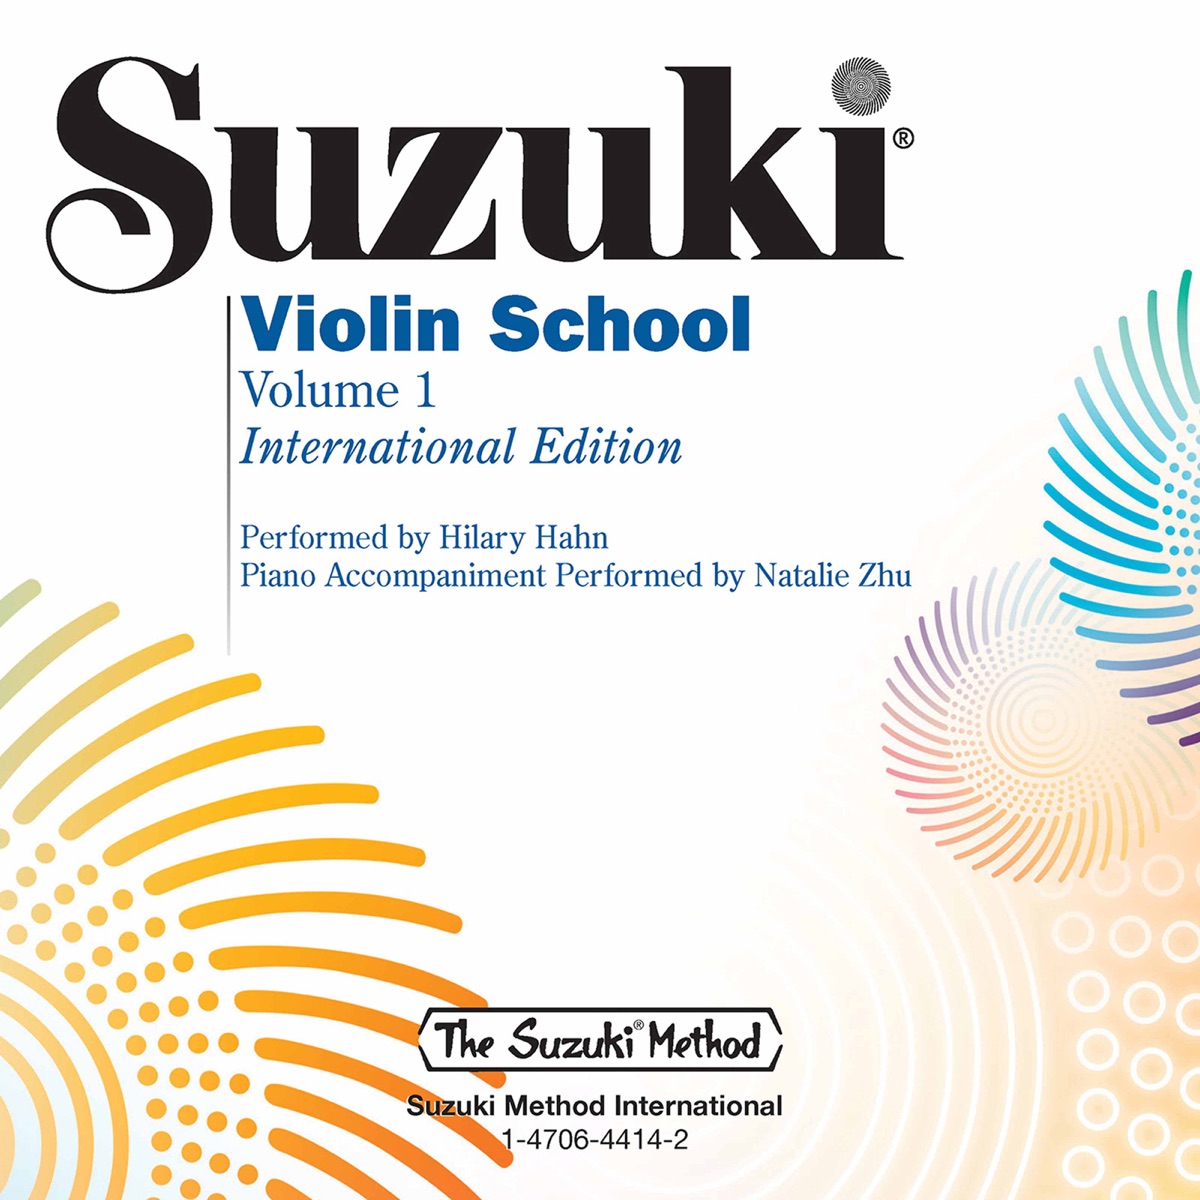 Suzuki Violin School, Vol. 1 by Hilary Hahn & Natalie Zhu on iTunes